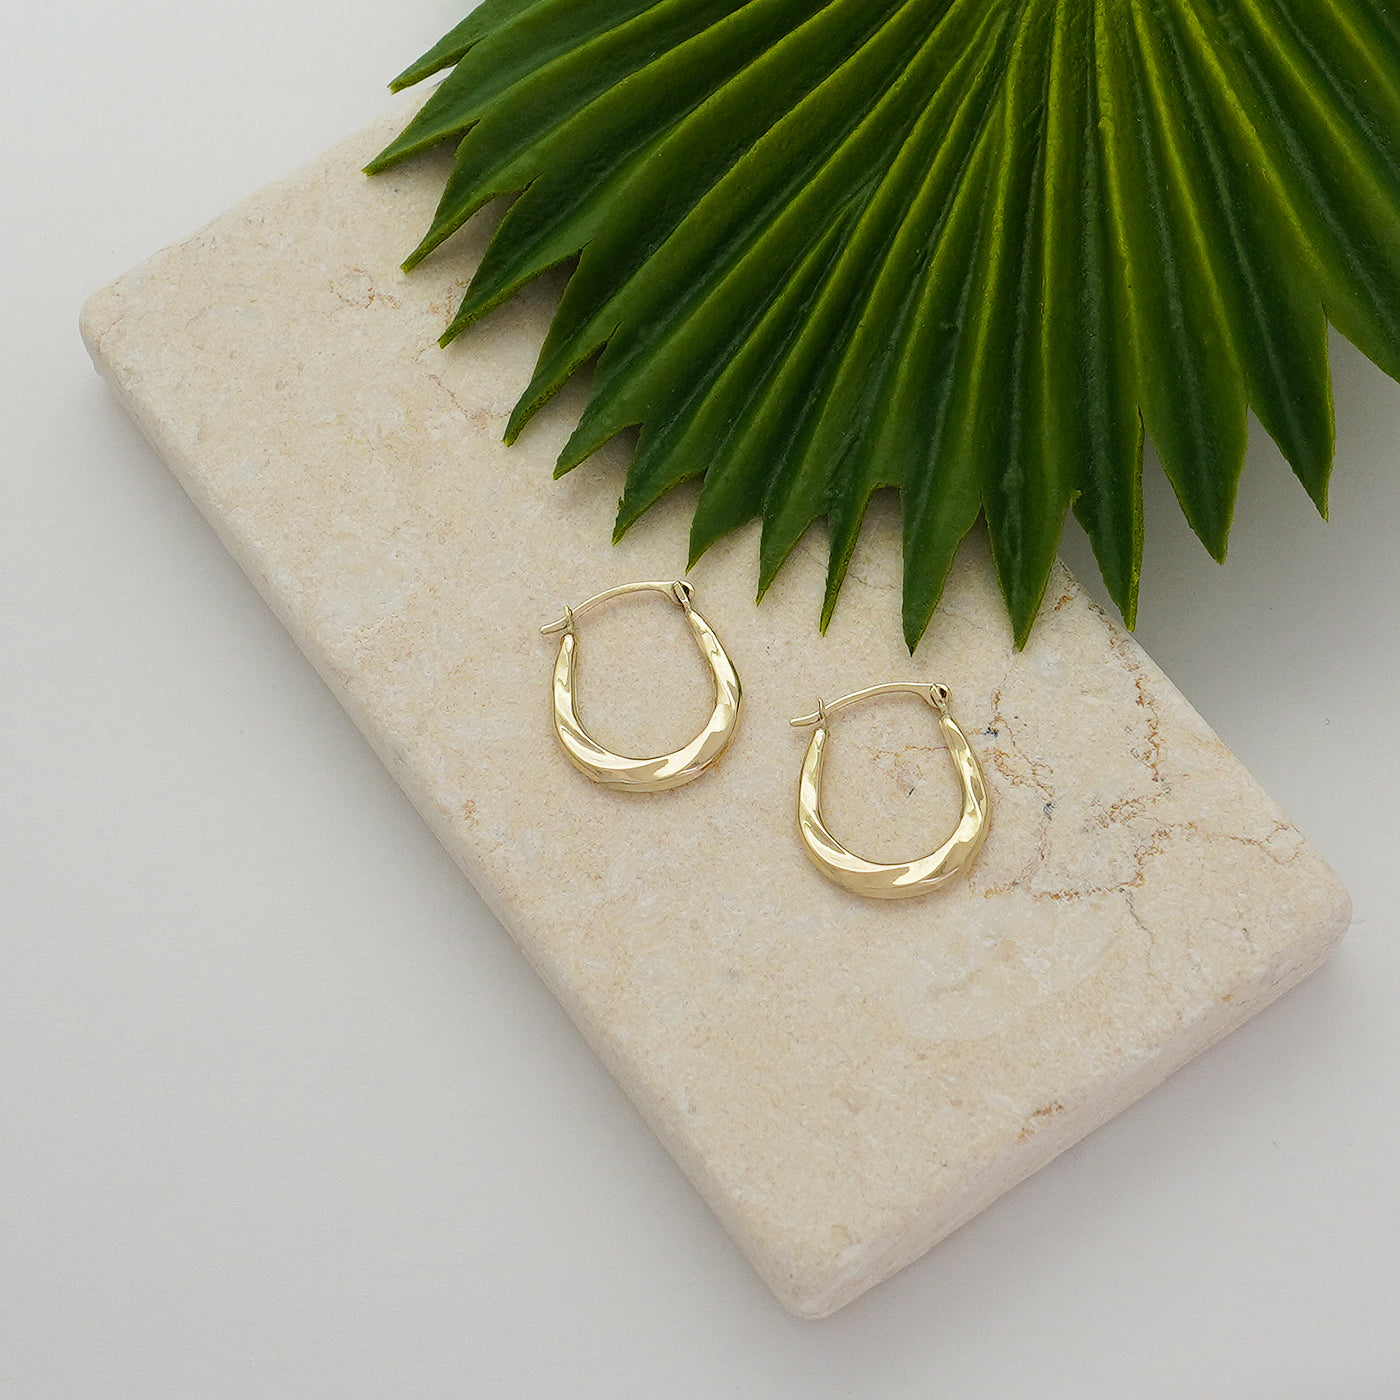 Solid Gold Twist Design Oval Shape Hoop Earrings